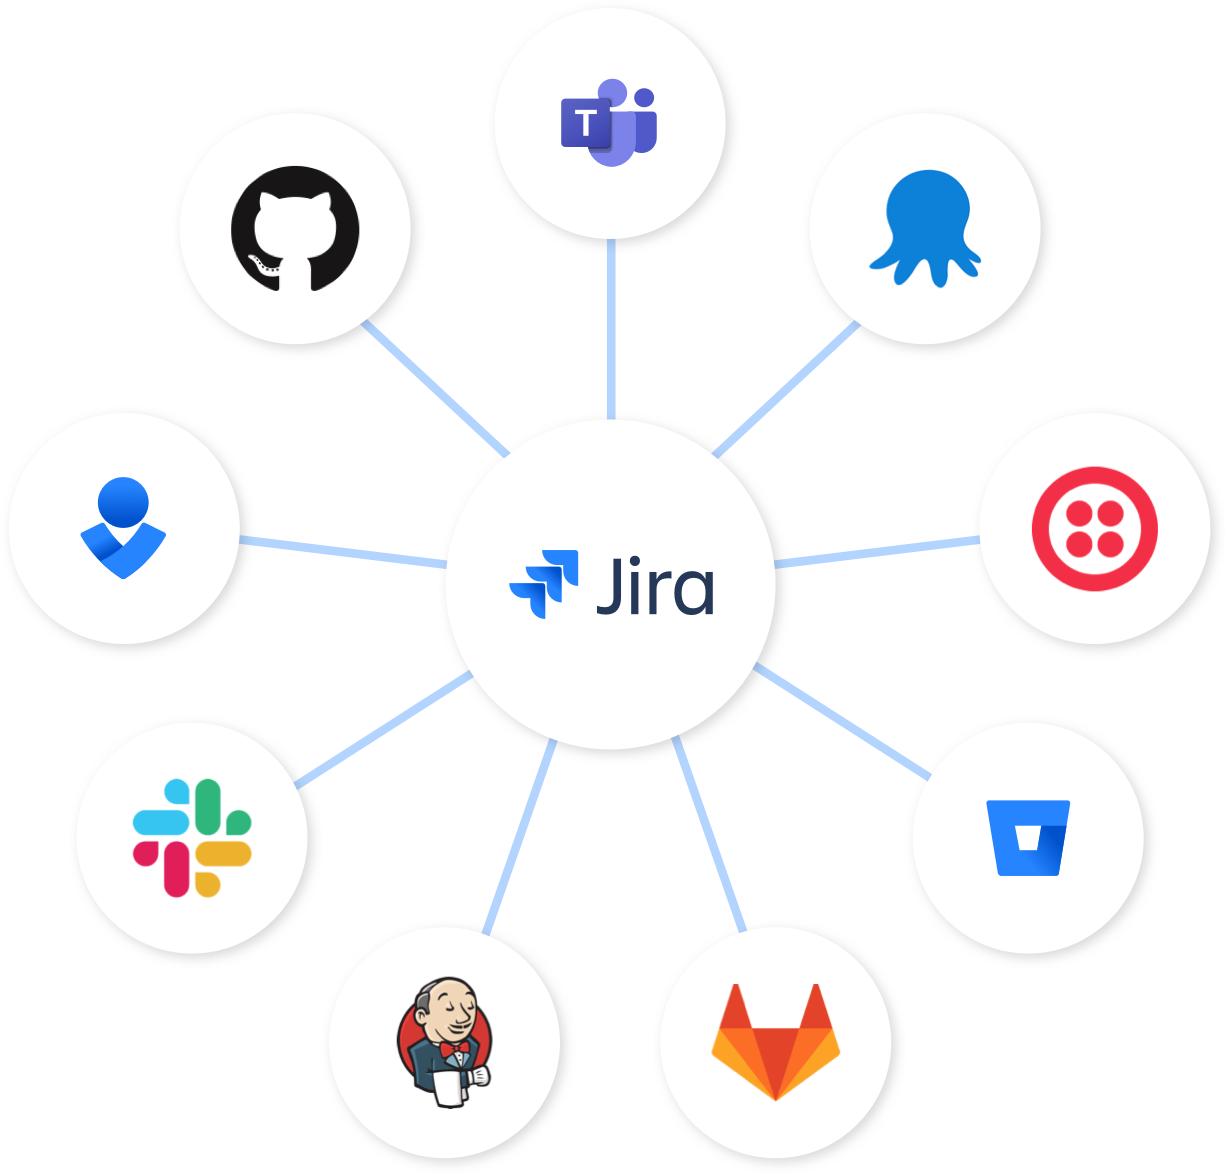 Jira-Knoten – Jira in der Mitte, verbunden mit Bitbucket, Slack und Opsgenie